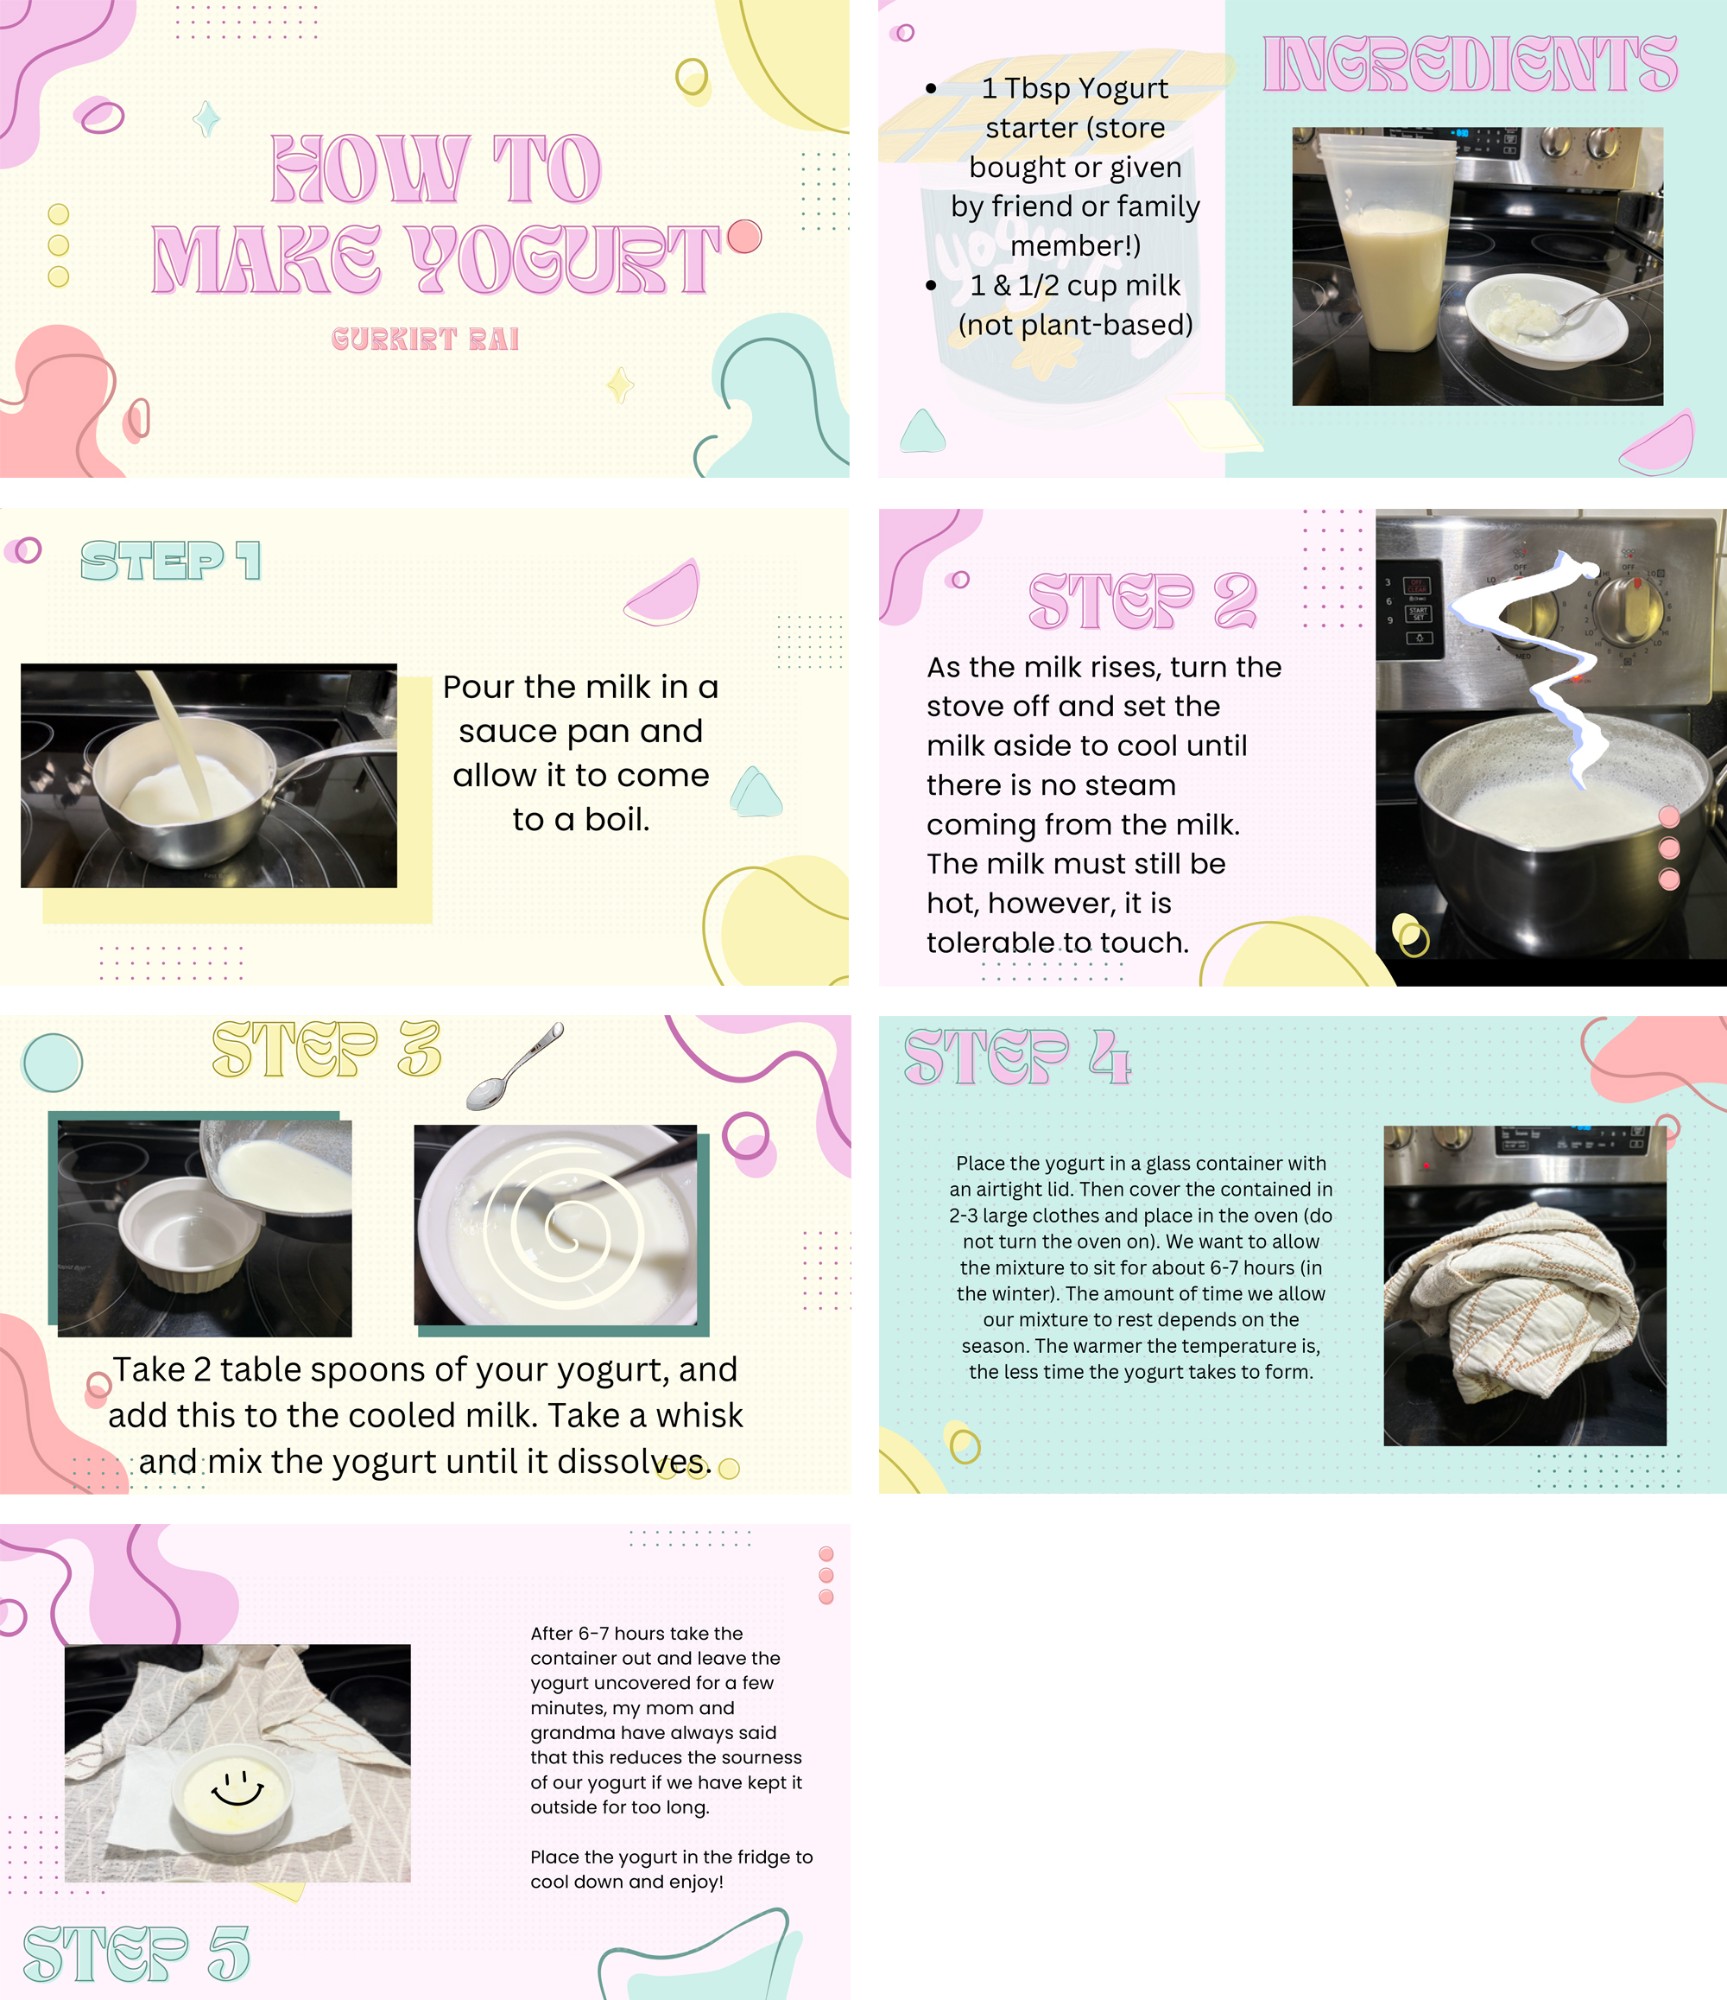 "How to Make Yogurt” by Gurkirt Rai